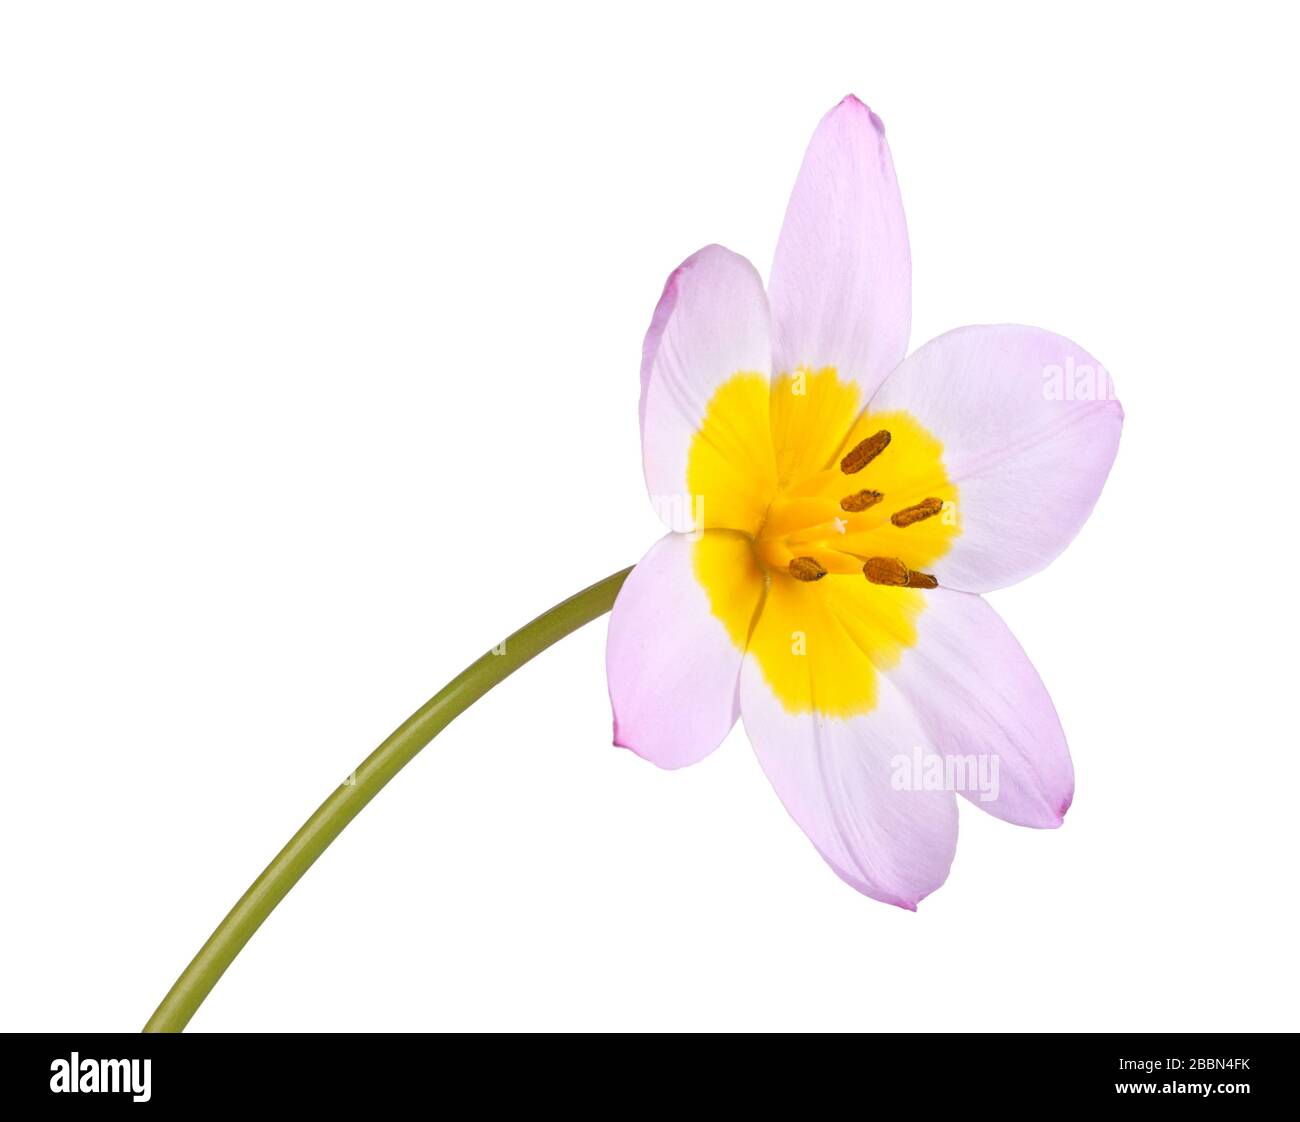 Flor única del cultivo de tulipán rosa y amarillo lila Wonder (Tulipa saxatilis subespecie bakeri) aislada sobre fondo blanco Foto de stock